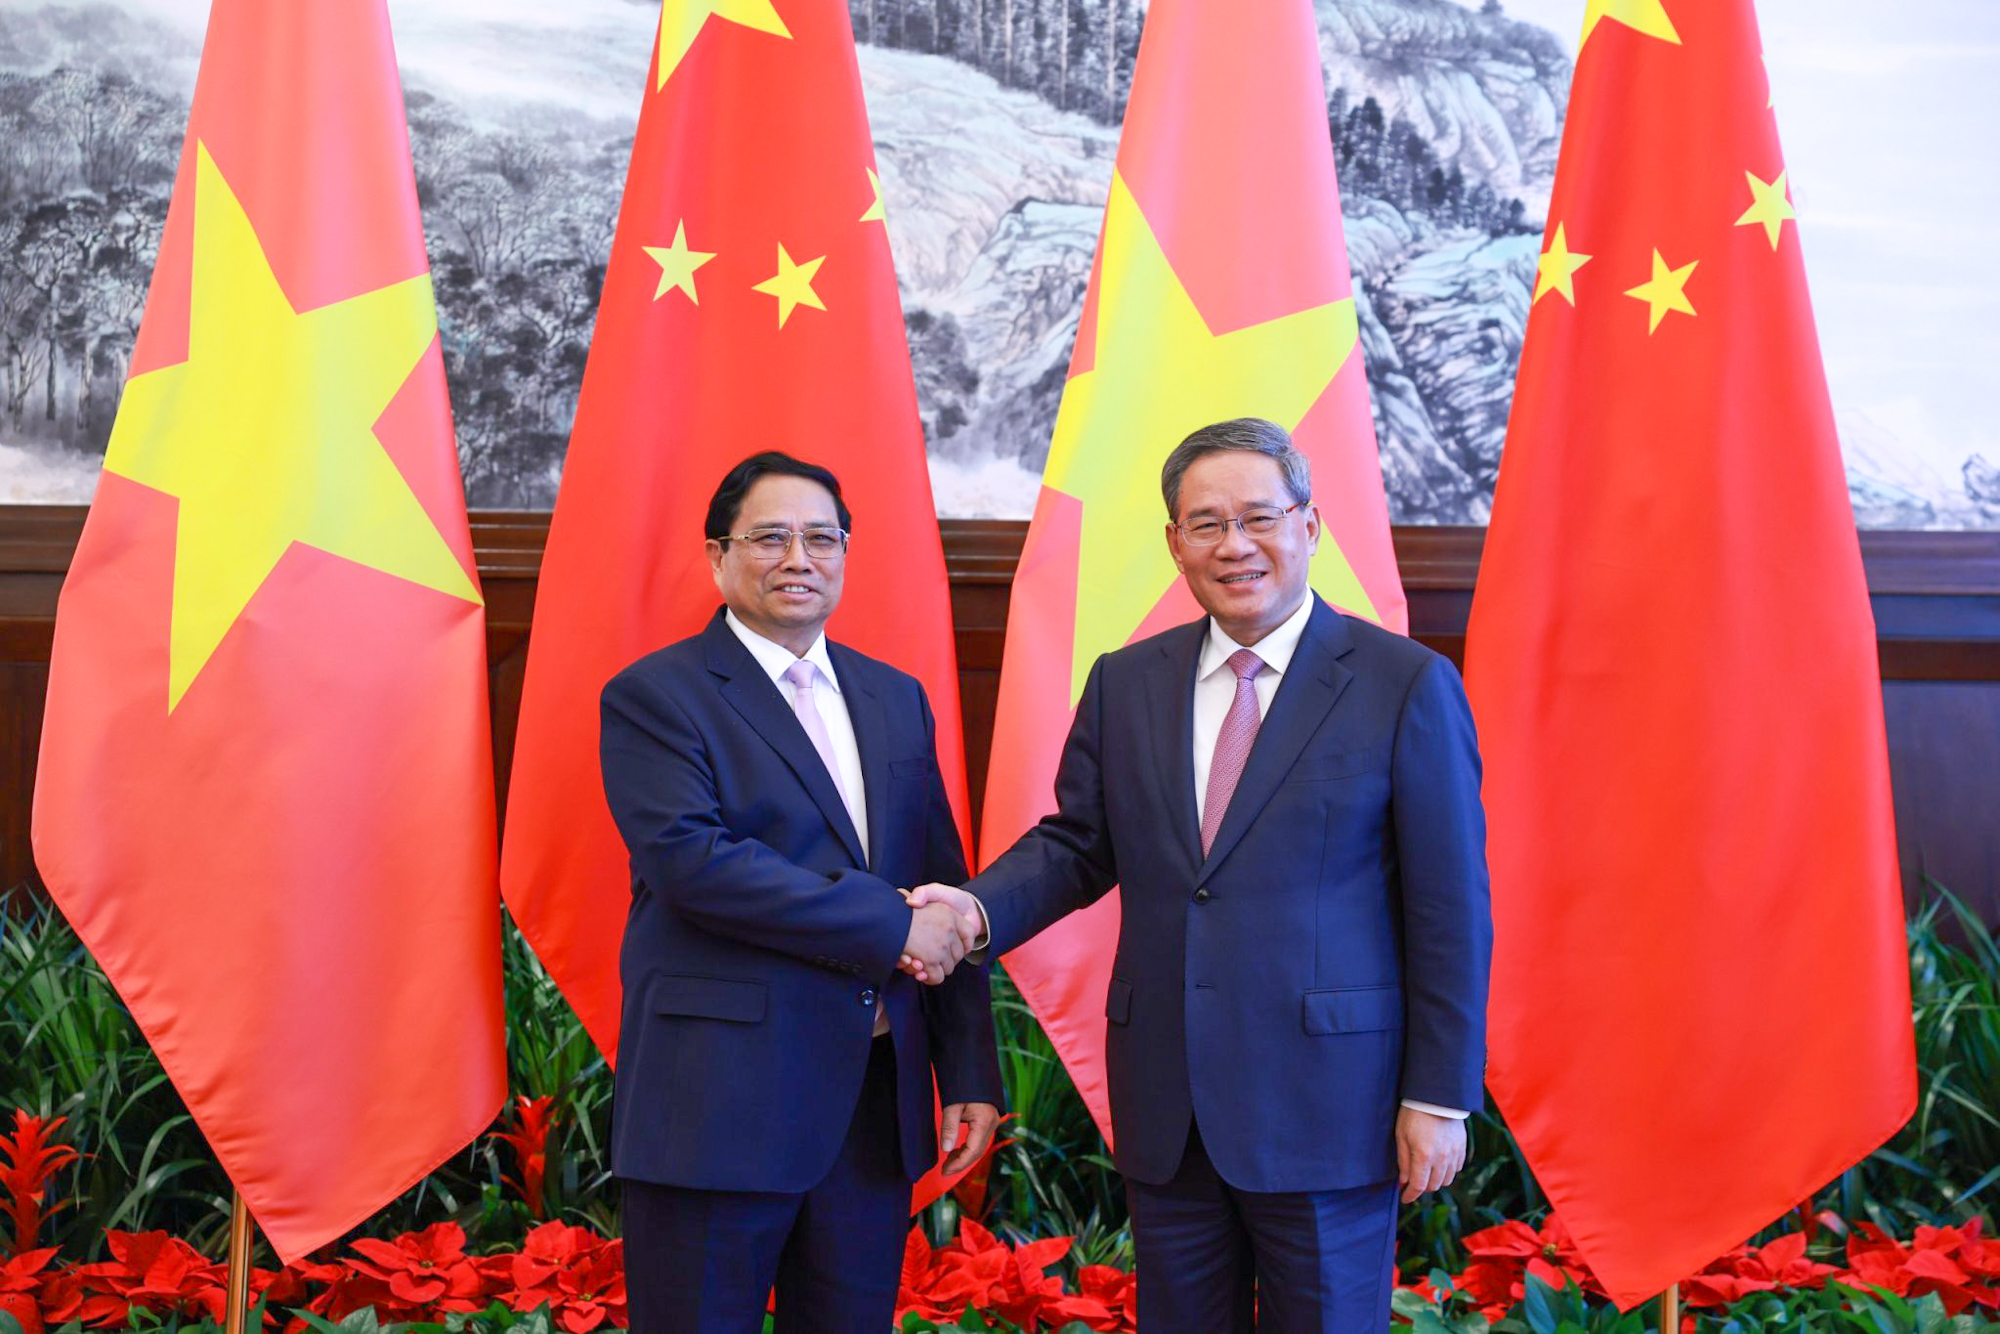 Chuyến công du Trung Quốc của Thủ tướng: Từ tầm nhìn chiến lược thành dự án cụ thể- Ảnh 7.